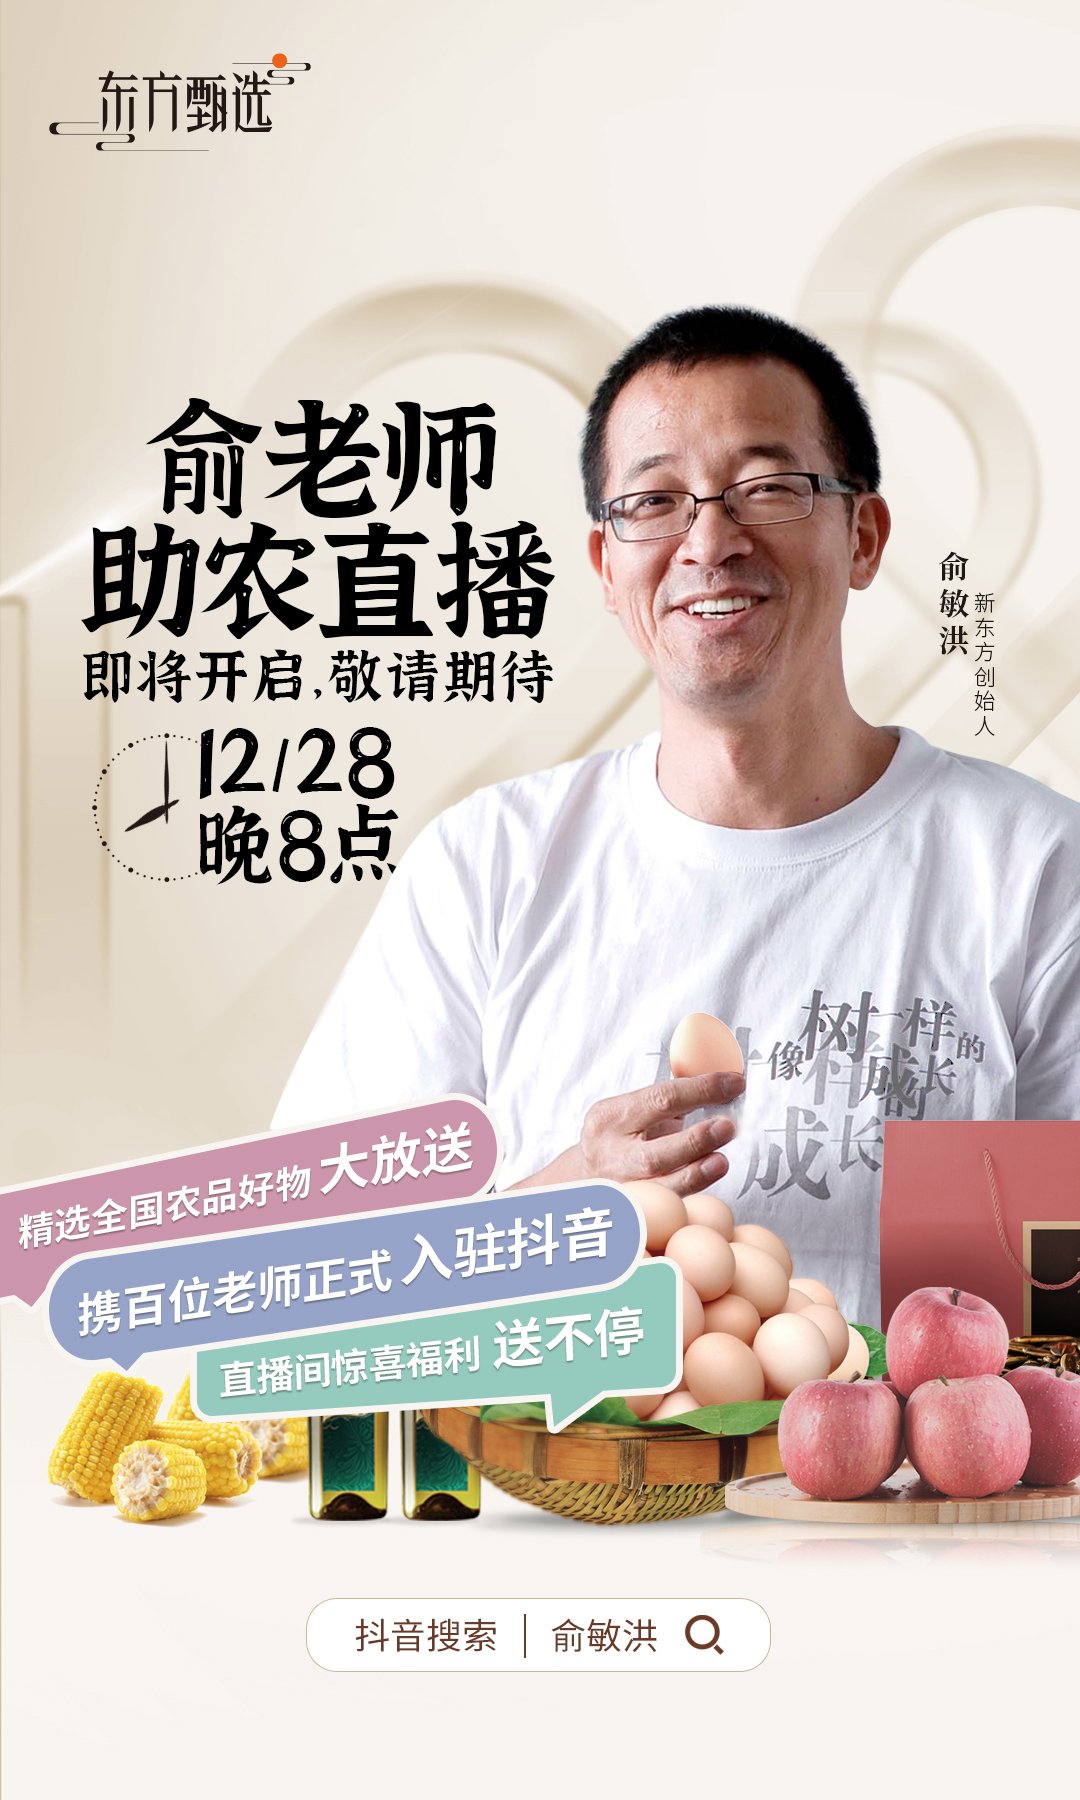 来了！12月28日俞敏洪将携“东方甄选”在抖音开启助农直播